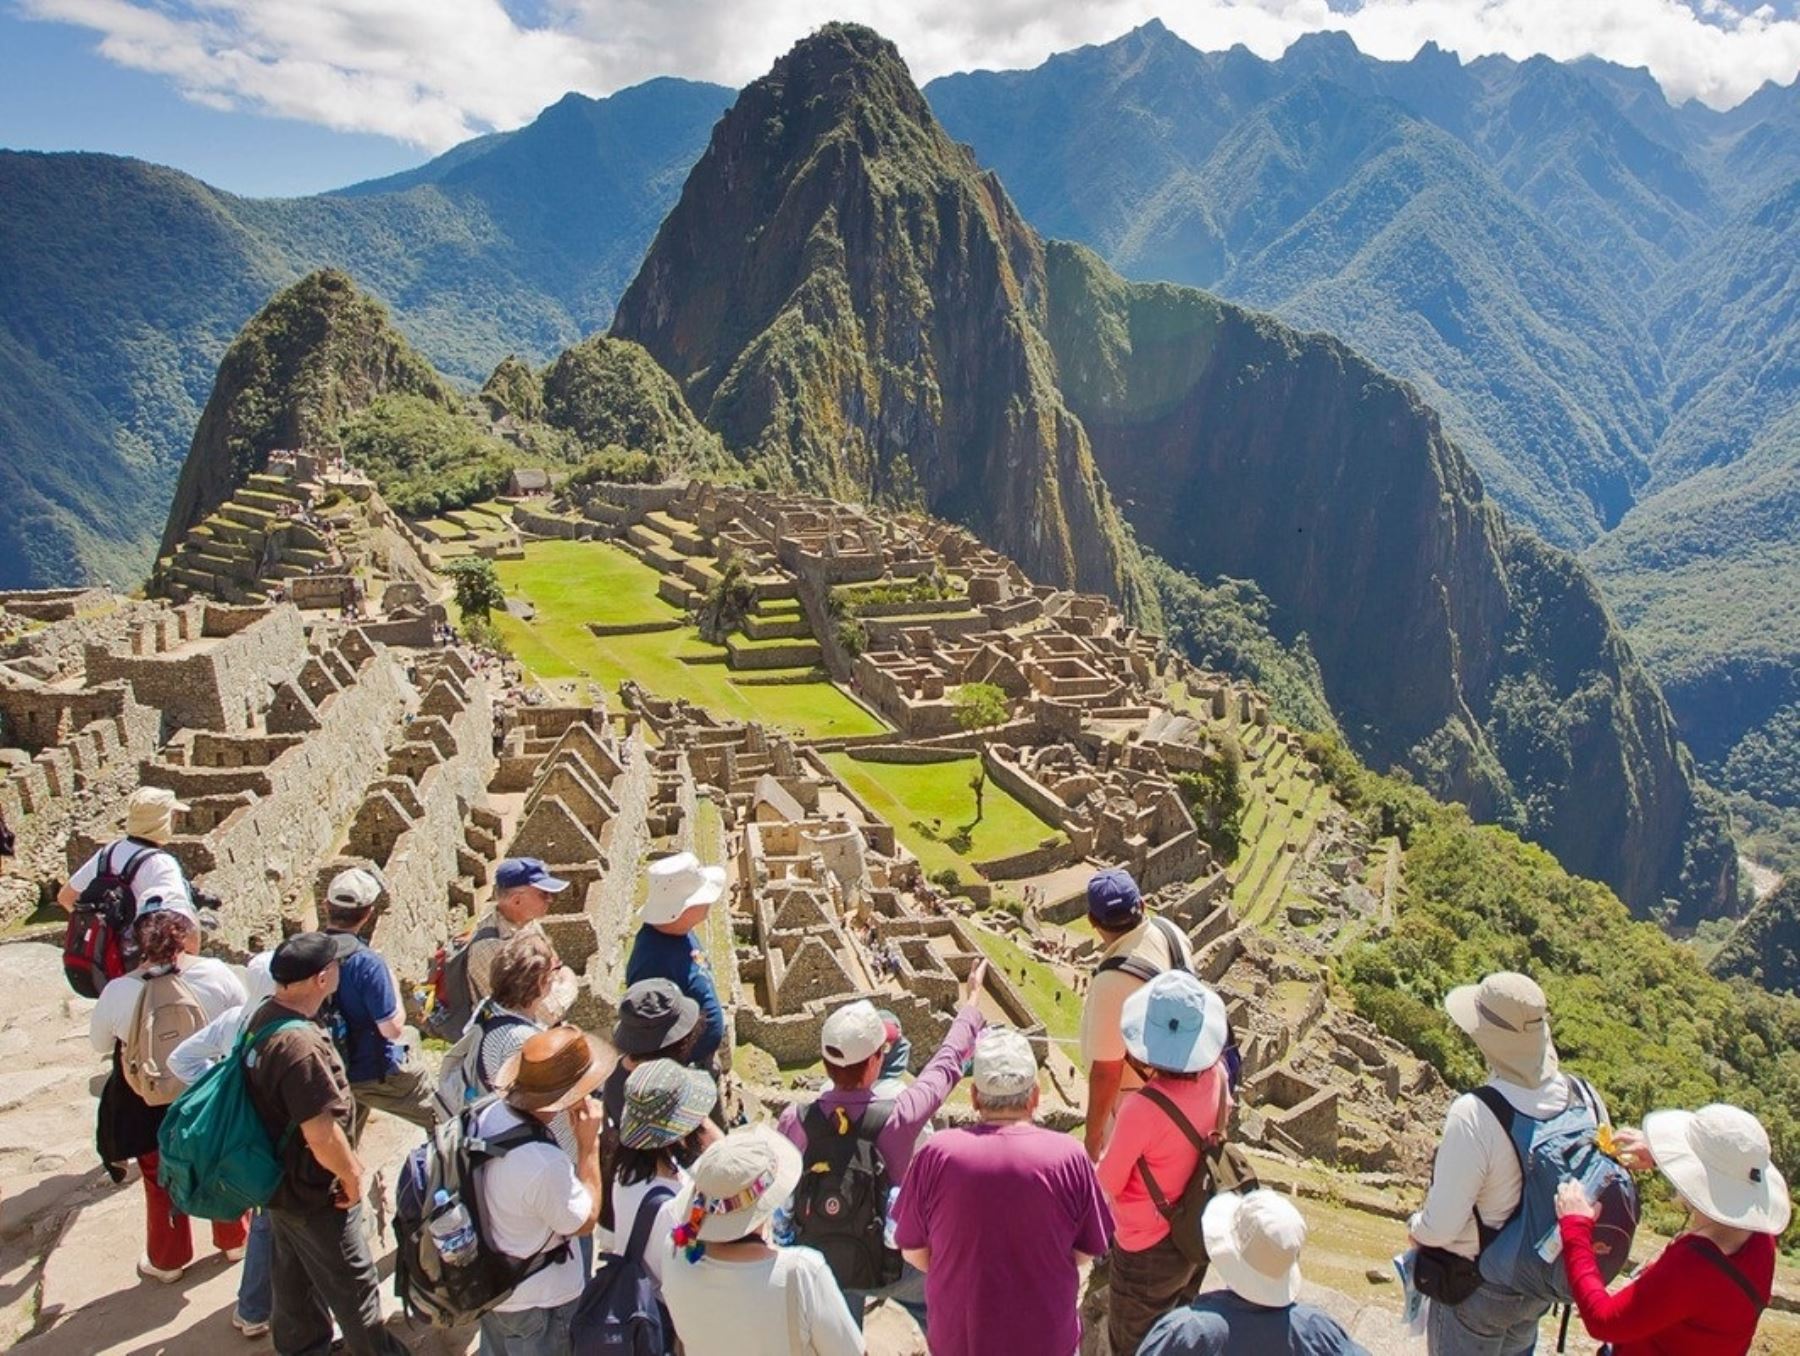 La ciudadela inca de Machu Picchu, Patrimonio de la Humanidad y una de las siete nuevas maravillas mundiales, es uno de los diez principales sitios antiguos más visitados por los turistas en el planeta, según la aplicación de viajes internacional Visited. ANDINA/Difusión